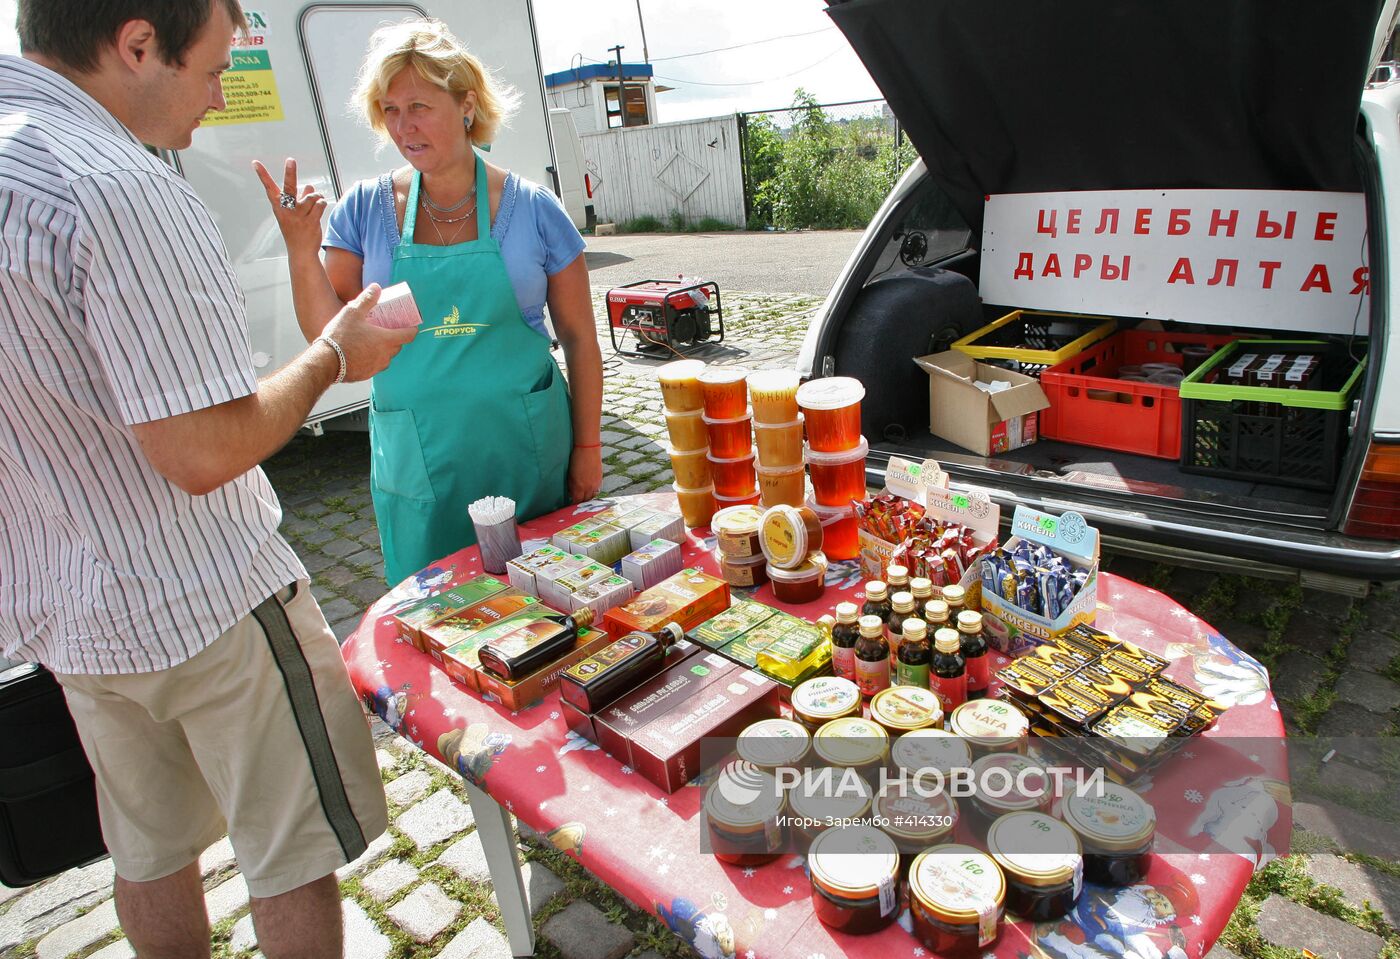 Ярмарка продовольствия в Калининграде